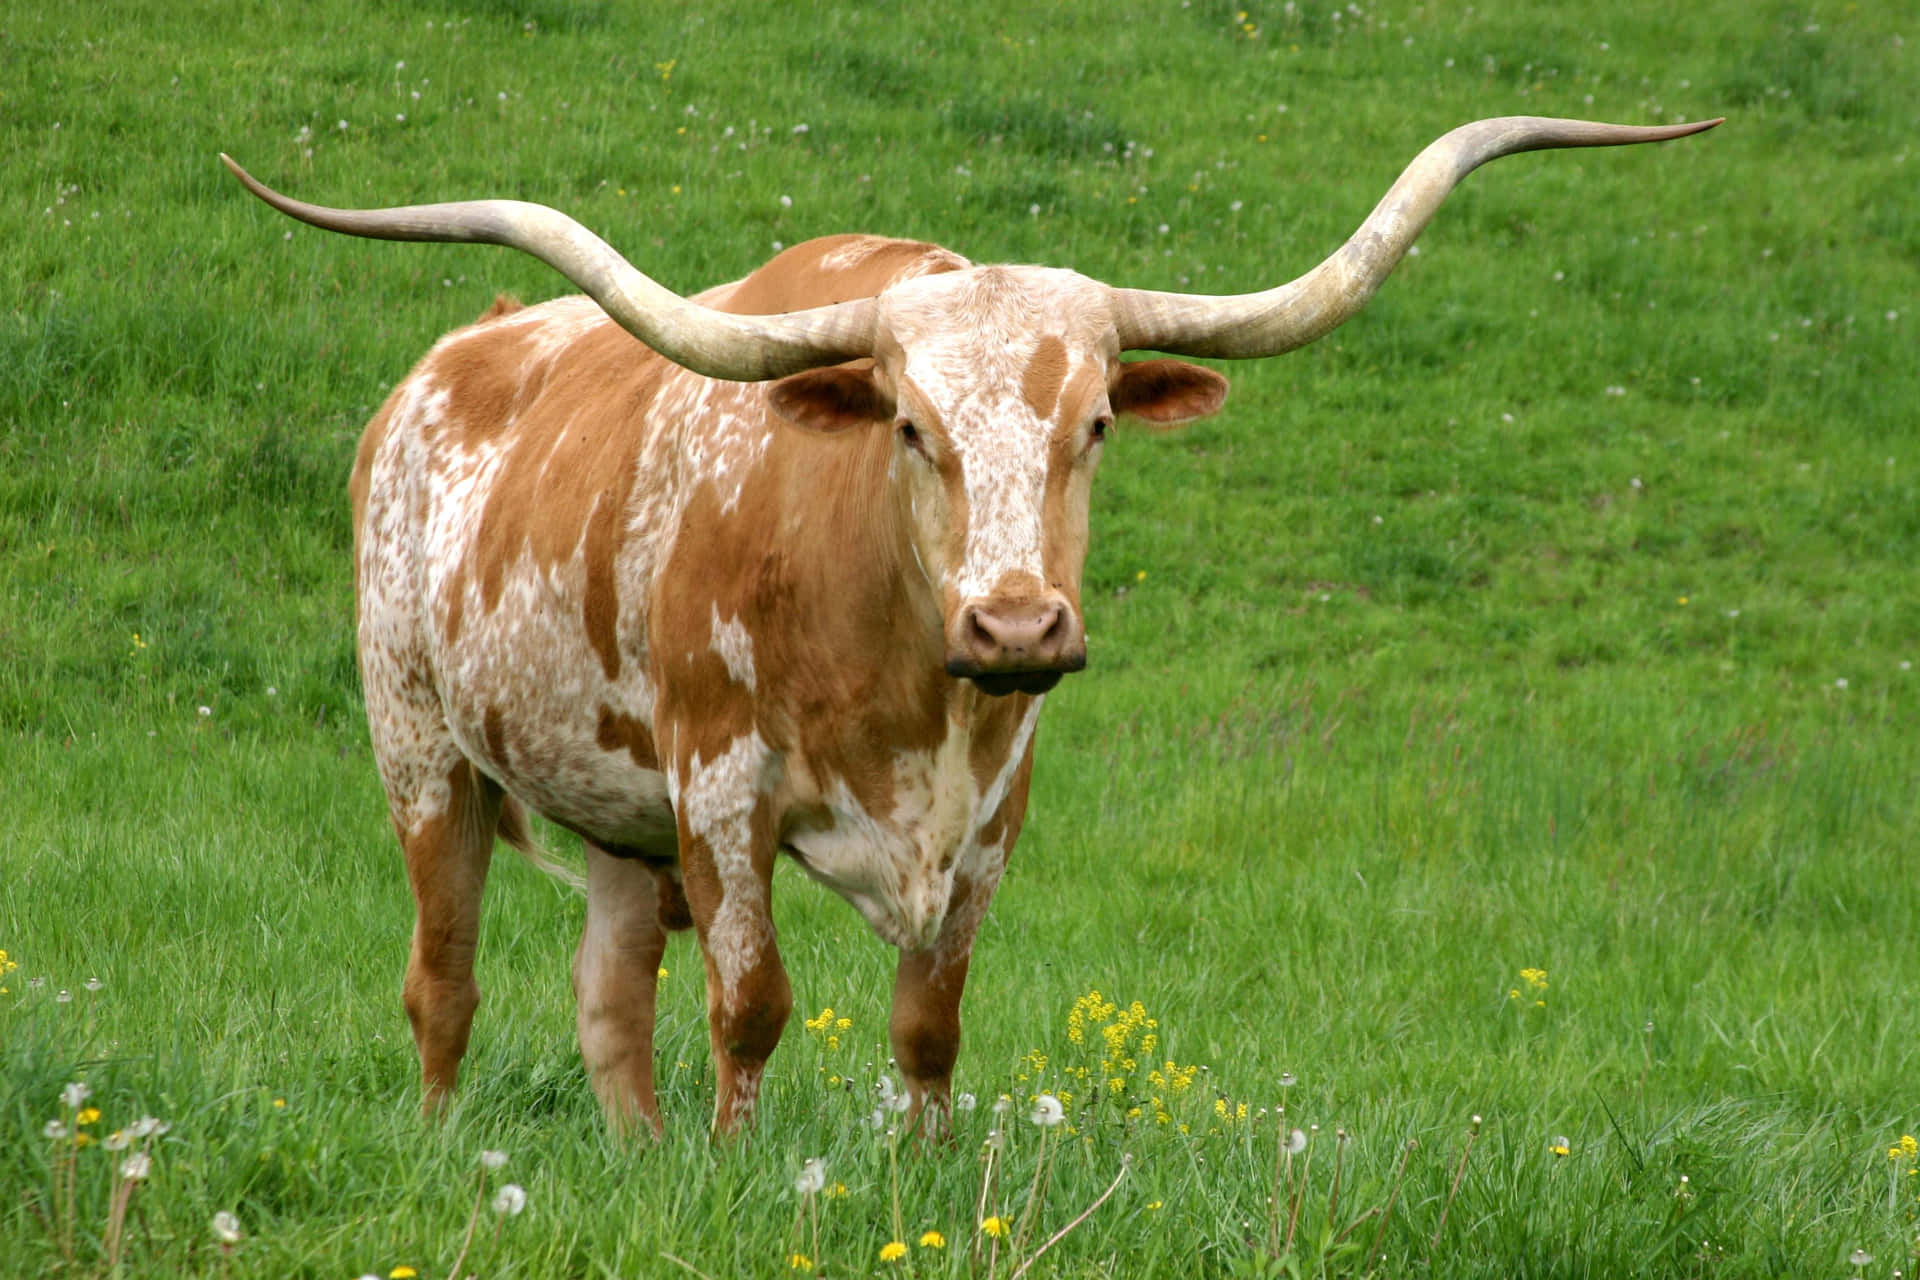 A Longhorn in a Texas Field